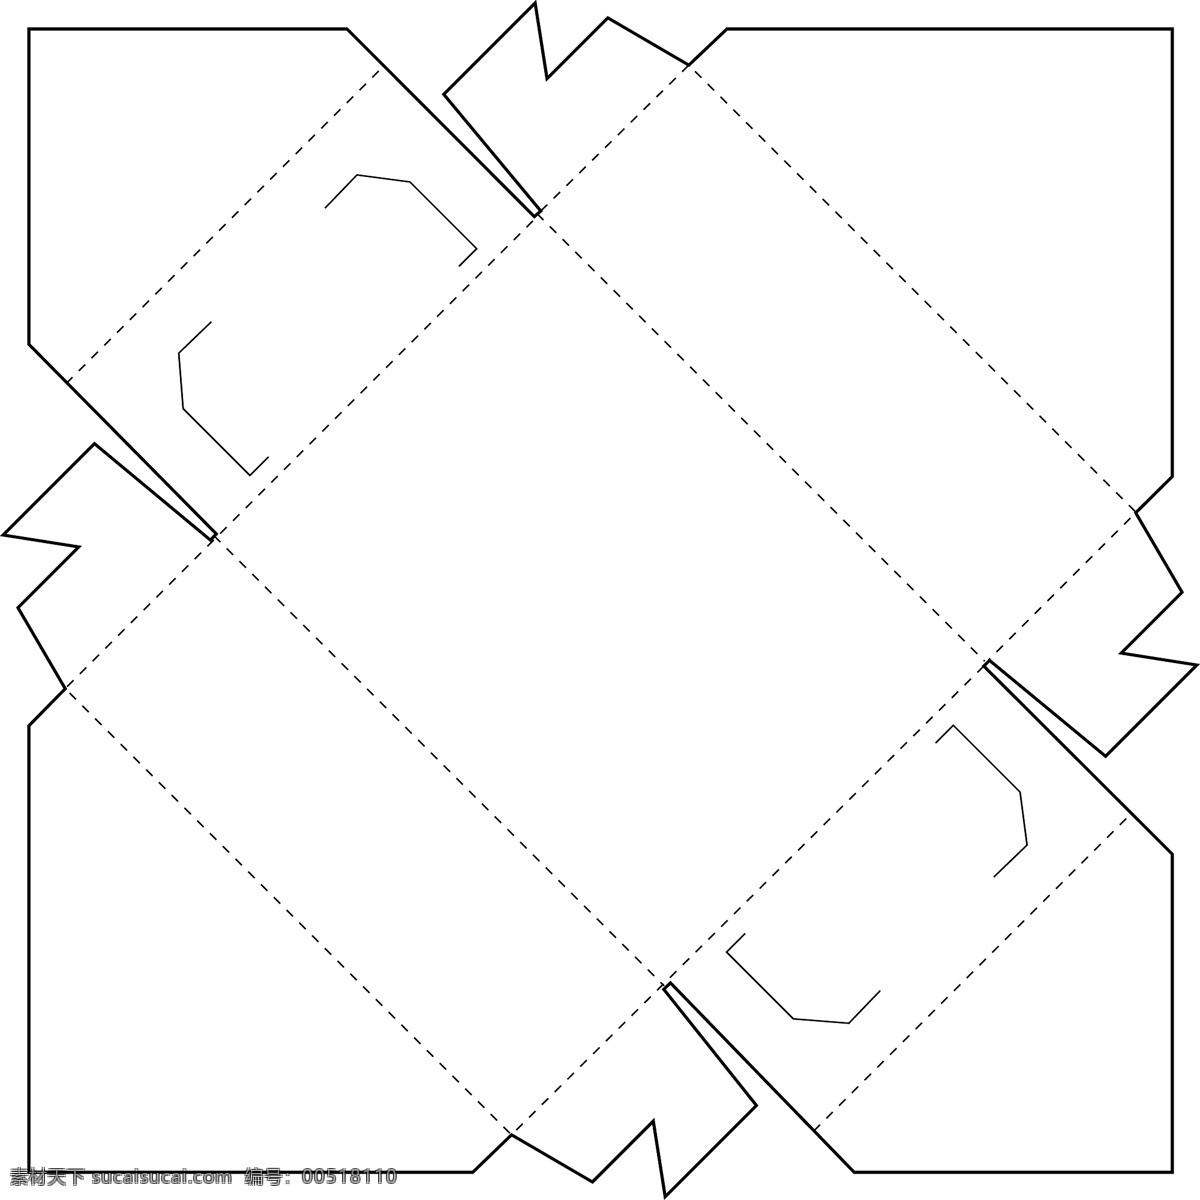 长条状 正 立方 包装盒 结构图